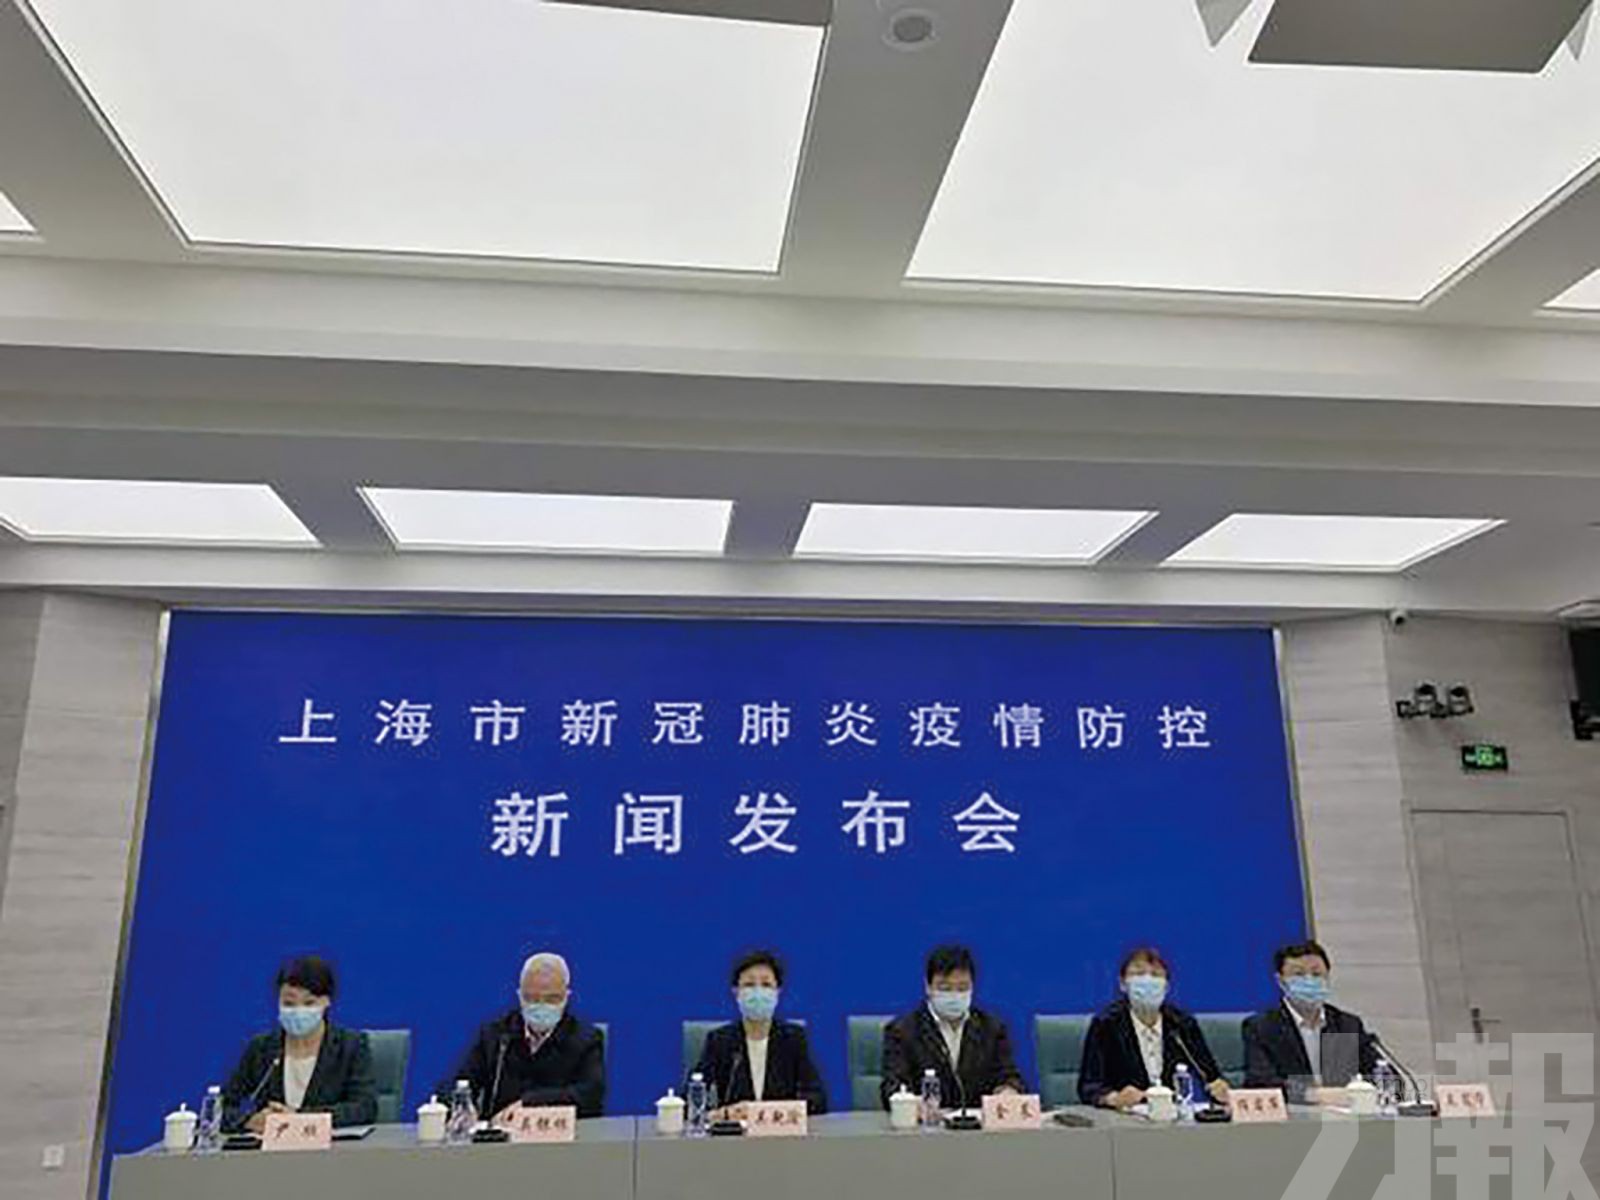 上海開展一個月預防性消毒